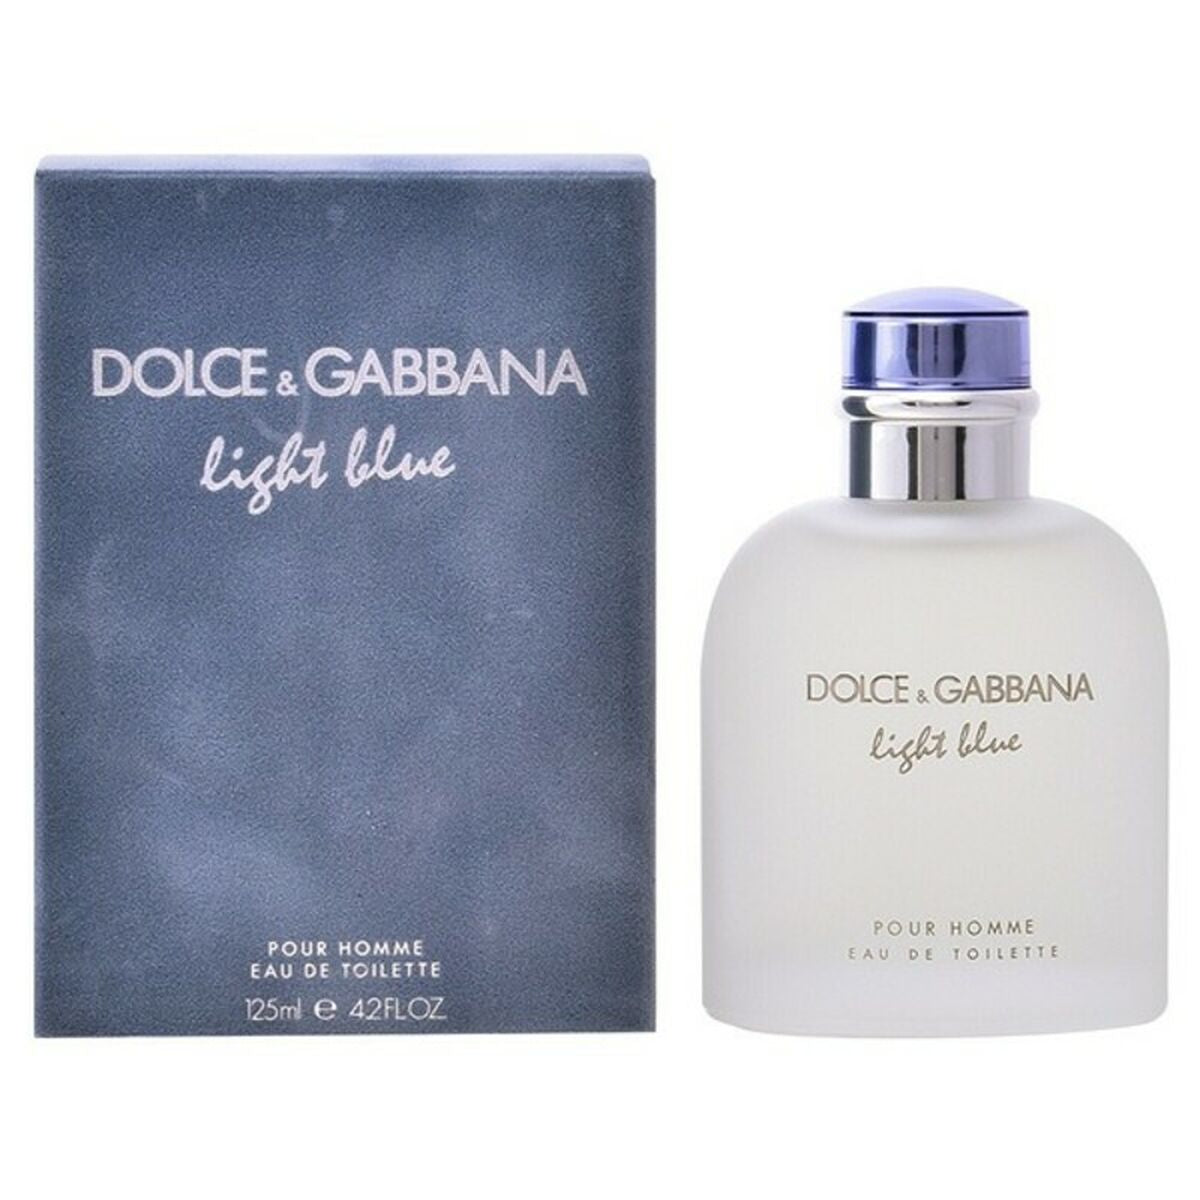 Profumo Uomo Dolce & Gabbana EDT Capacità:125 ml